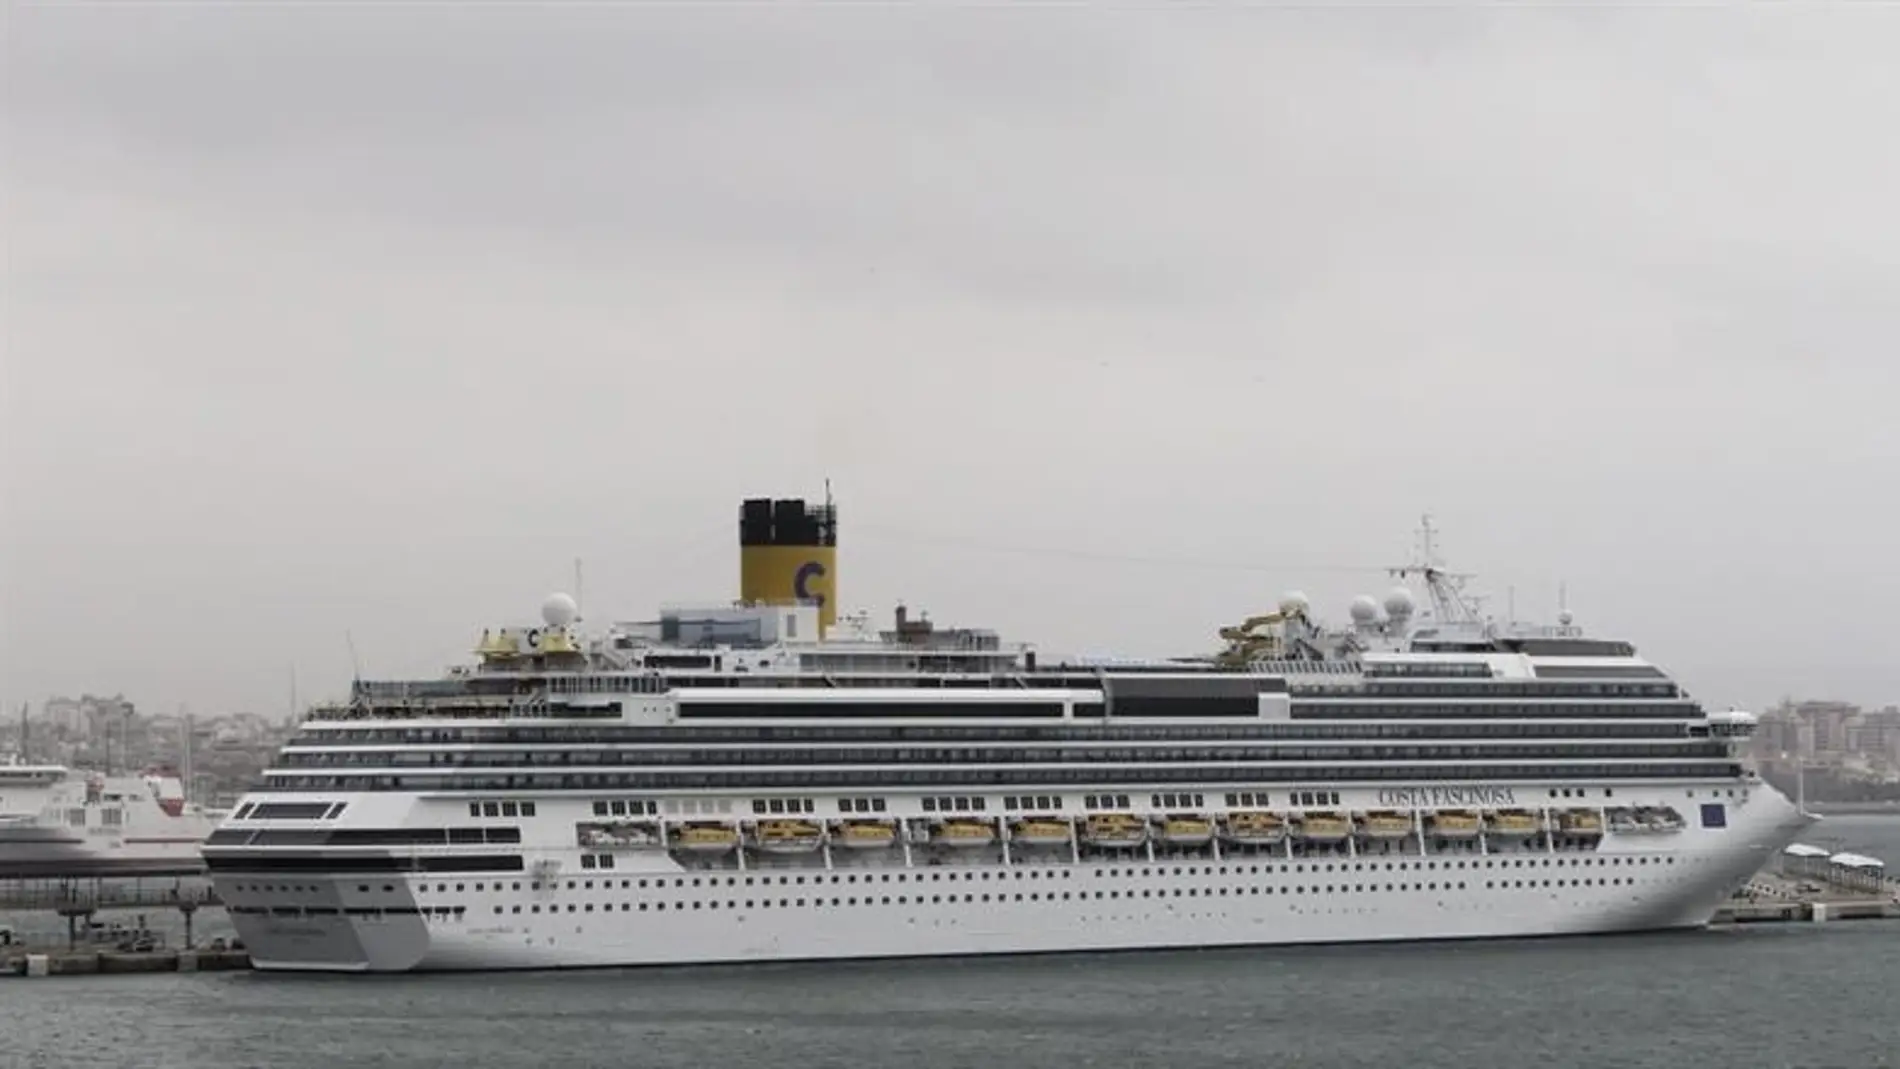 El crucero 'Costa Fascinosa' a su llegada al puerto de Palma